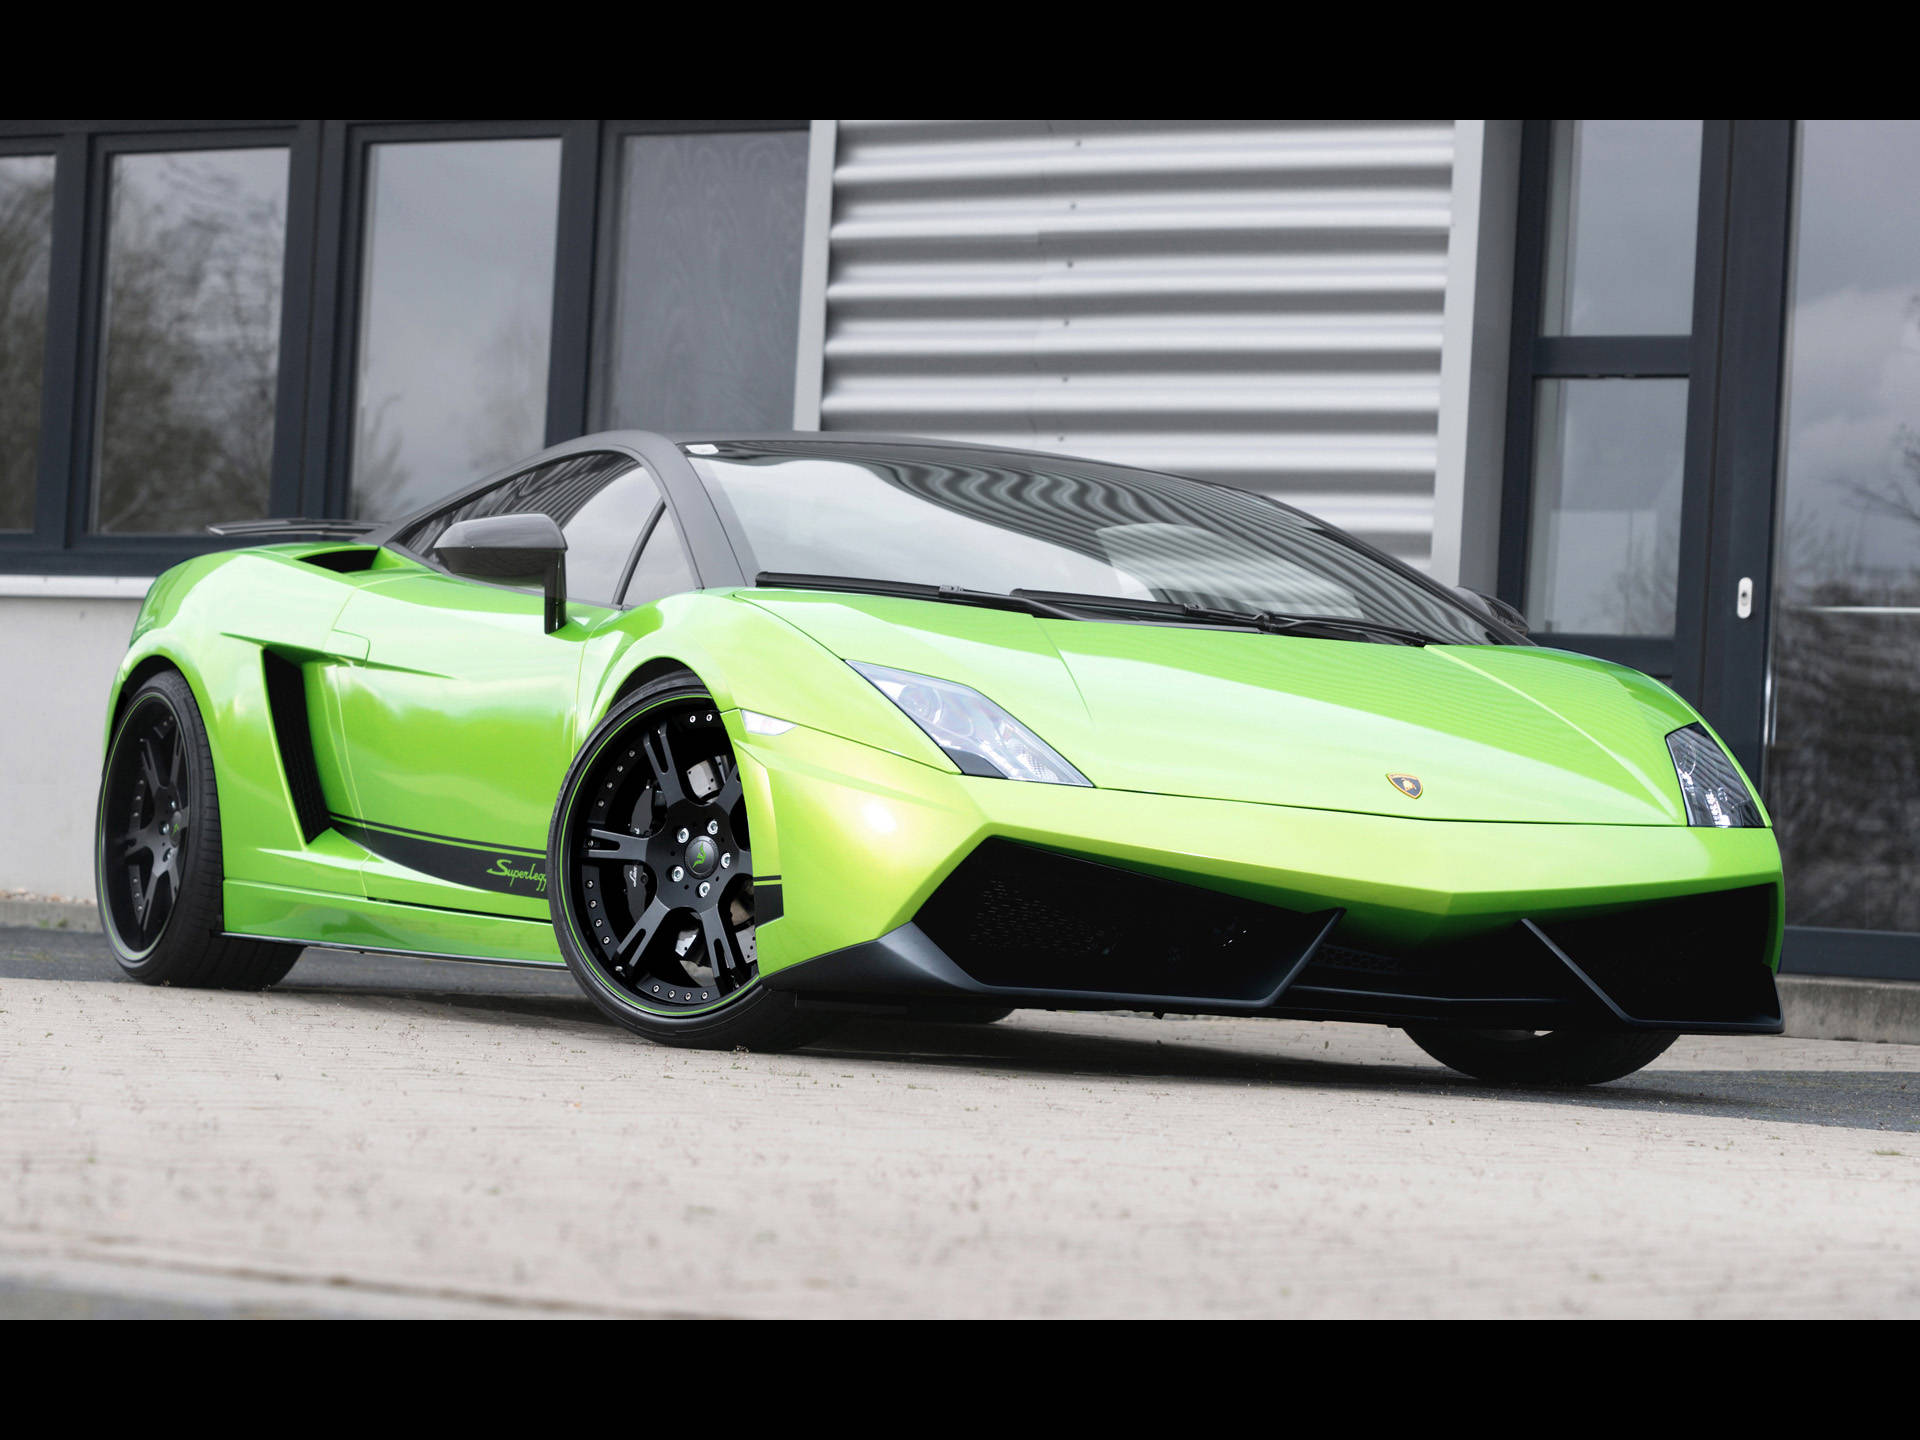 4k Lamborghini Gallardo Apple Green Betyder En Högupplöst Bakgrundsbild På En Grönt Färgad Lamborghini Gallardo. Wallpaper